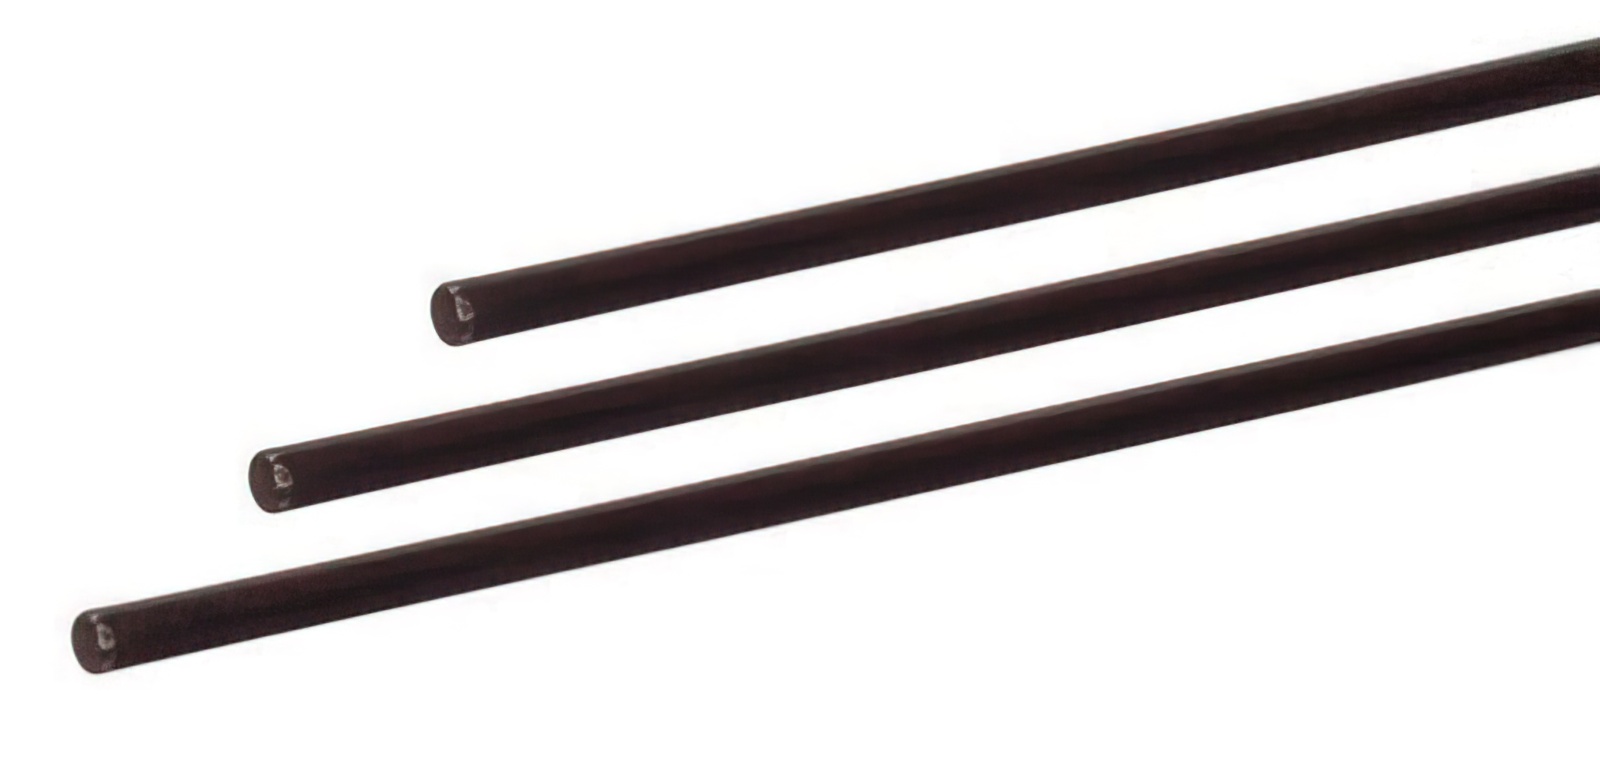 10 Stück - Gfk-Vollstab (Fiberglasstab/Glasfaserstab) 5 mm 100 cm schwarz für Drachen- und Modellbau Basteln Montagen Messebau Industrie Haushalt